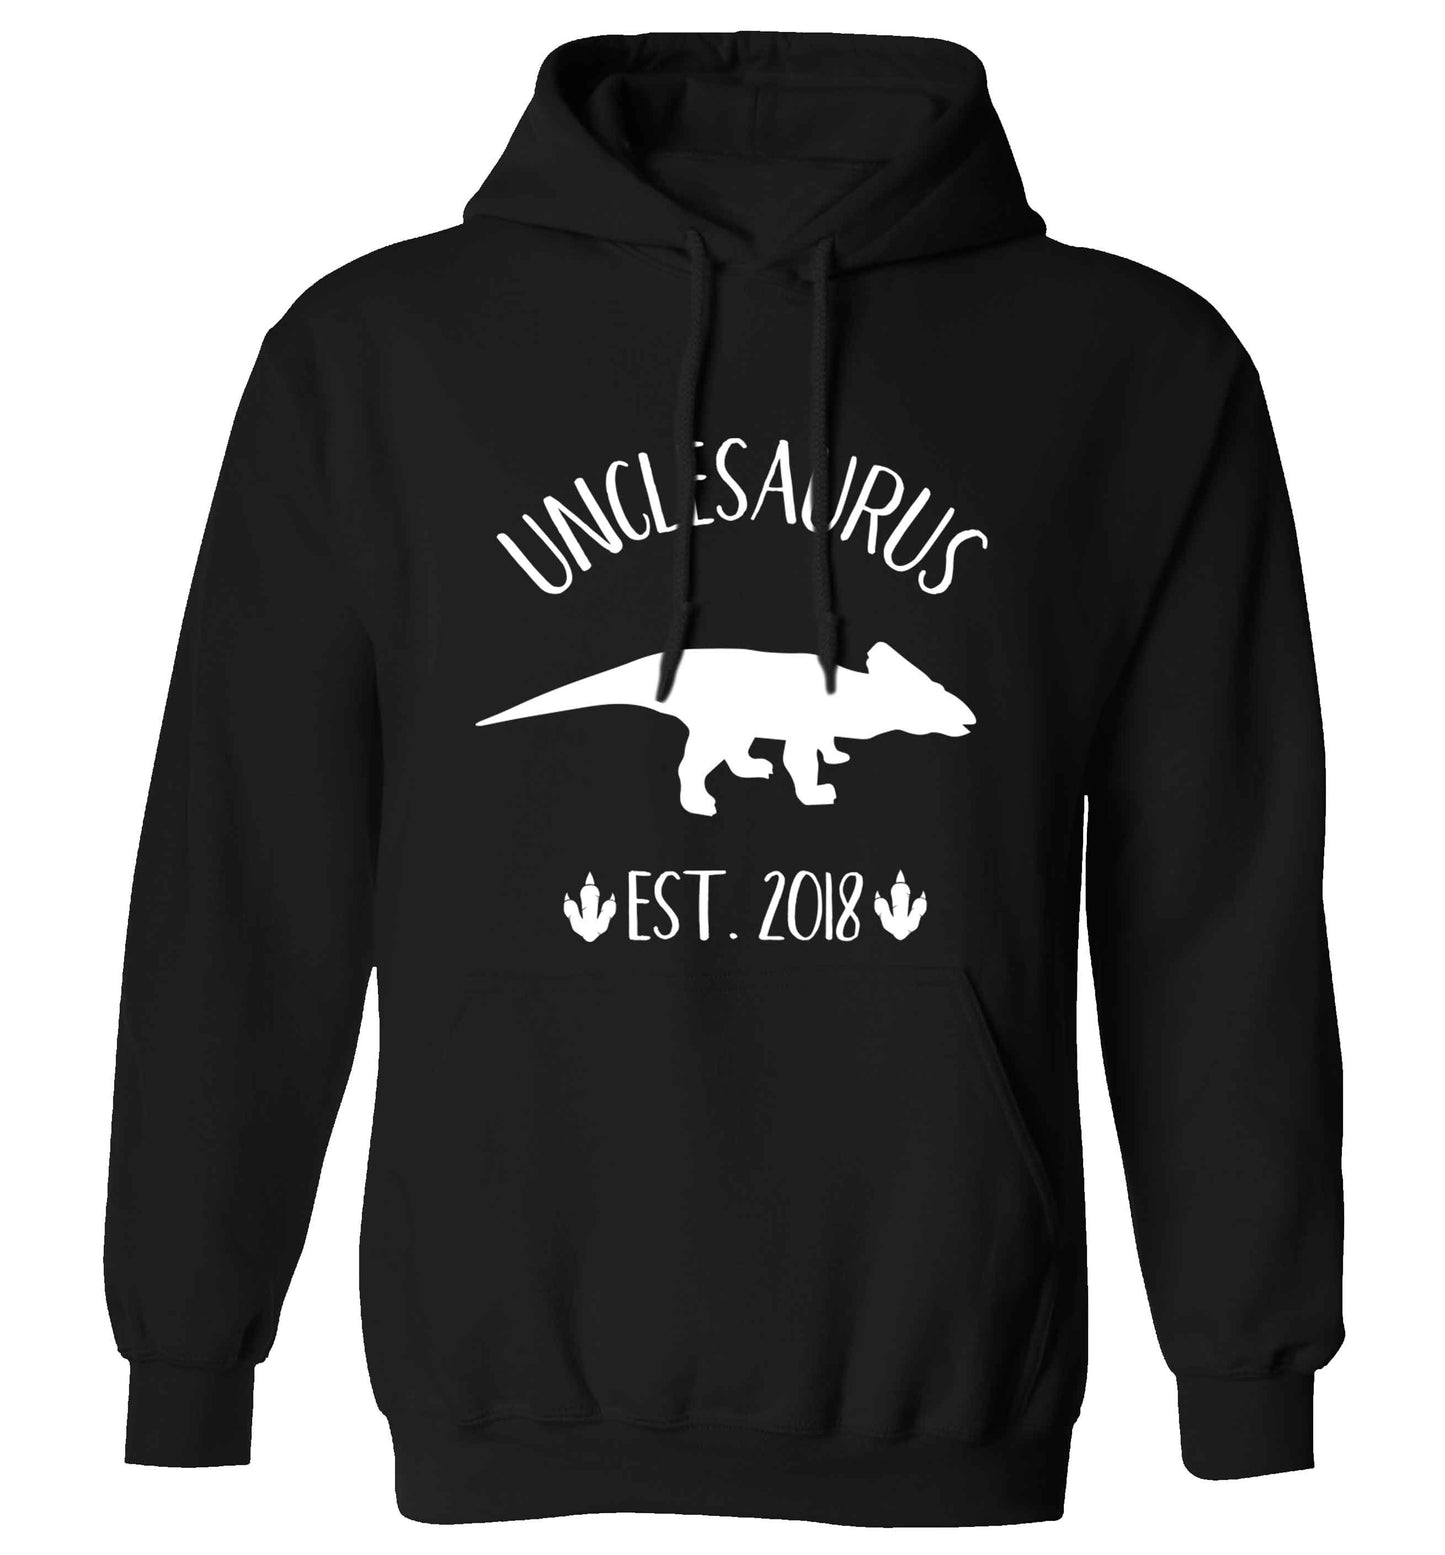 Personalised unclesaurus since (custom date) adults unisex black hoodie 2XL